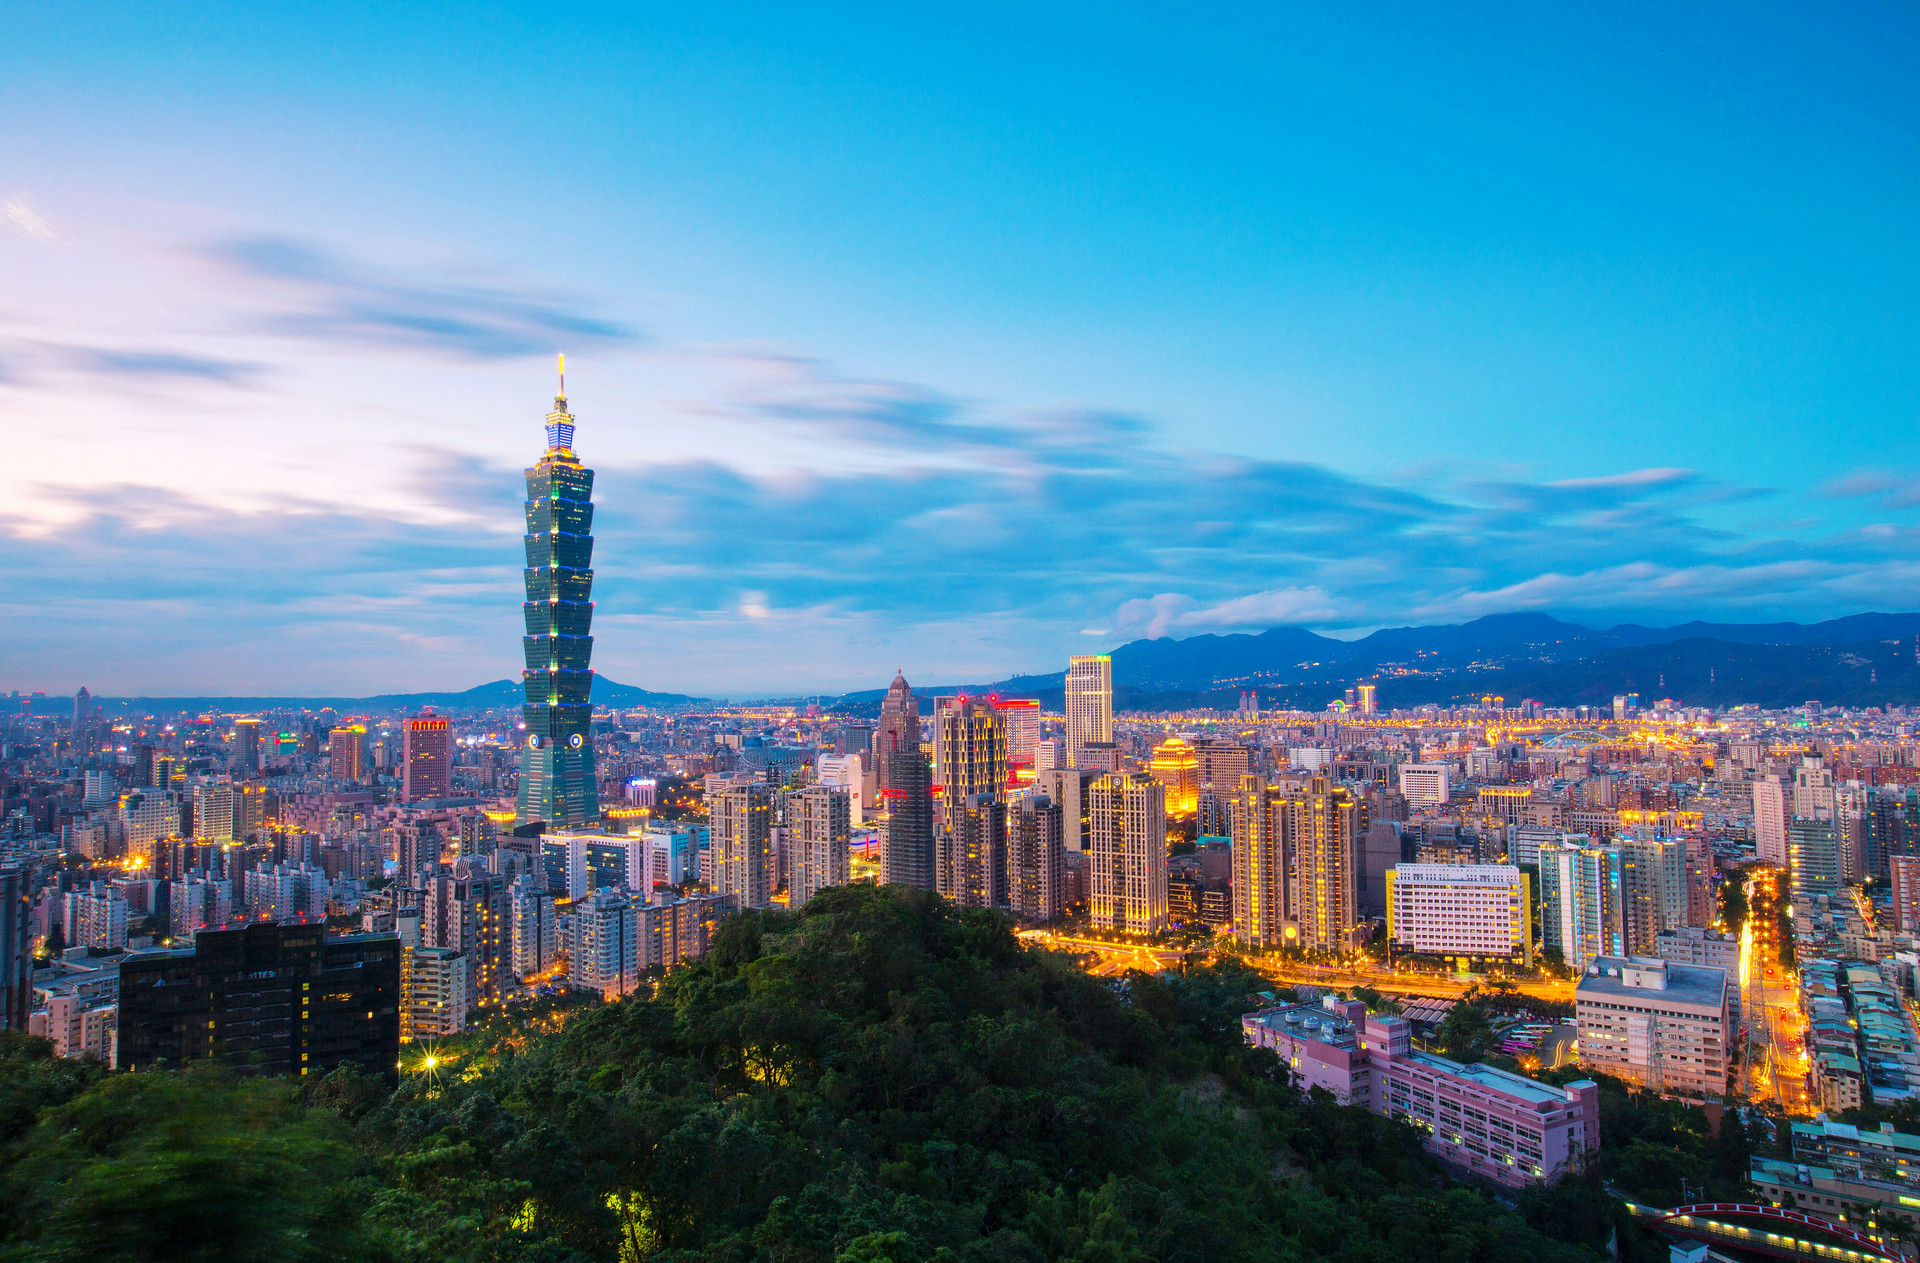 台湾三个月观光收益减损近千亿元新台币